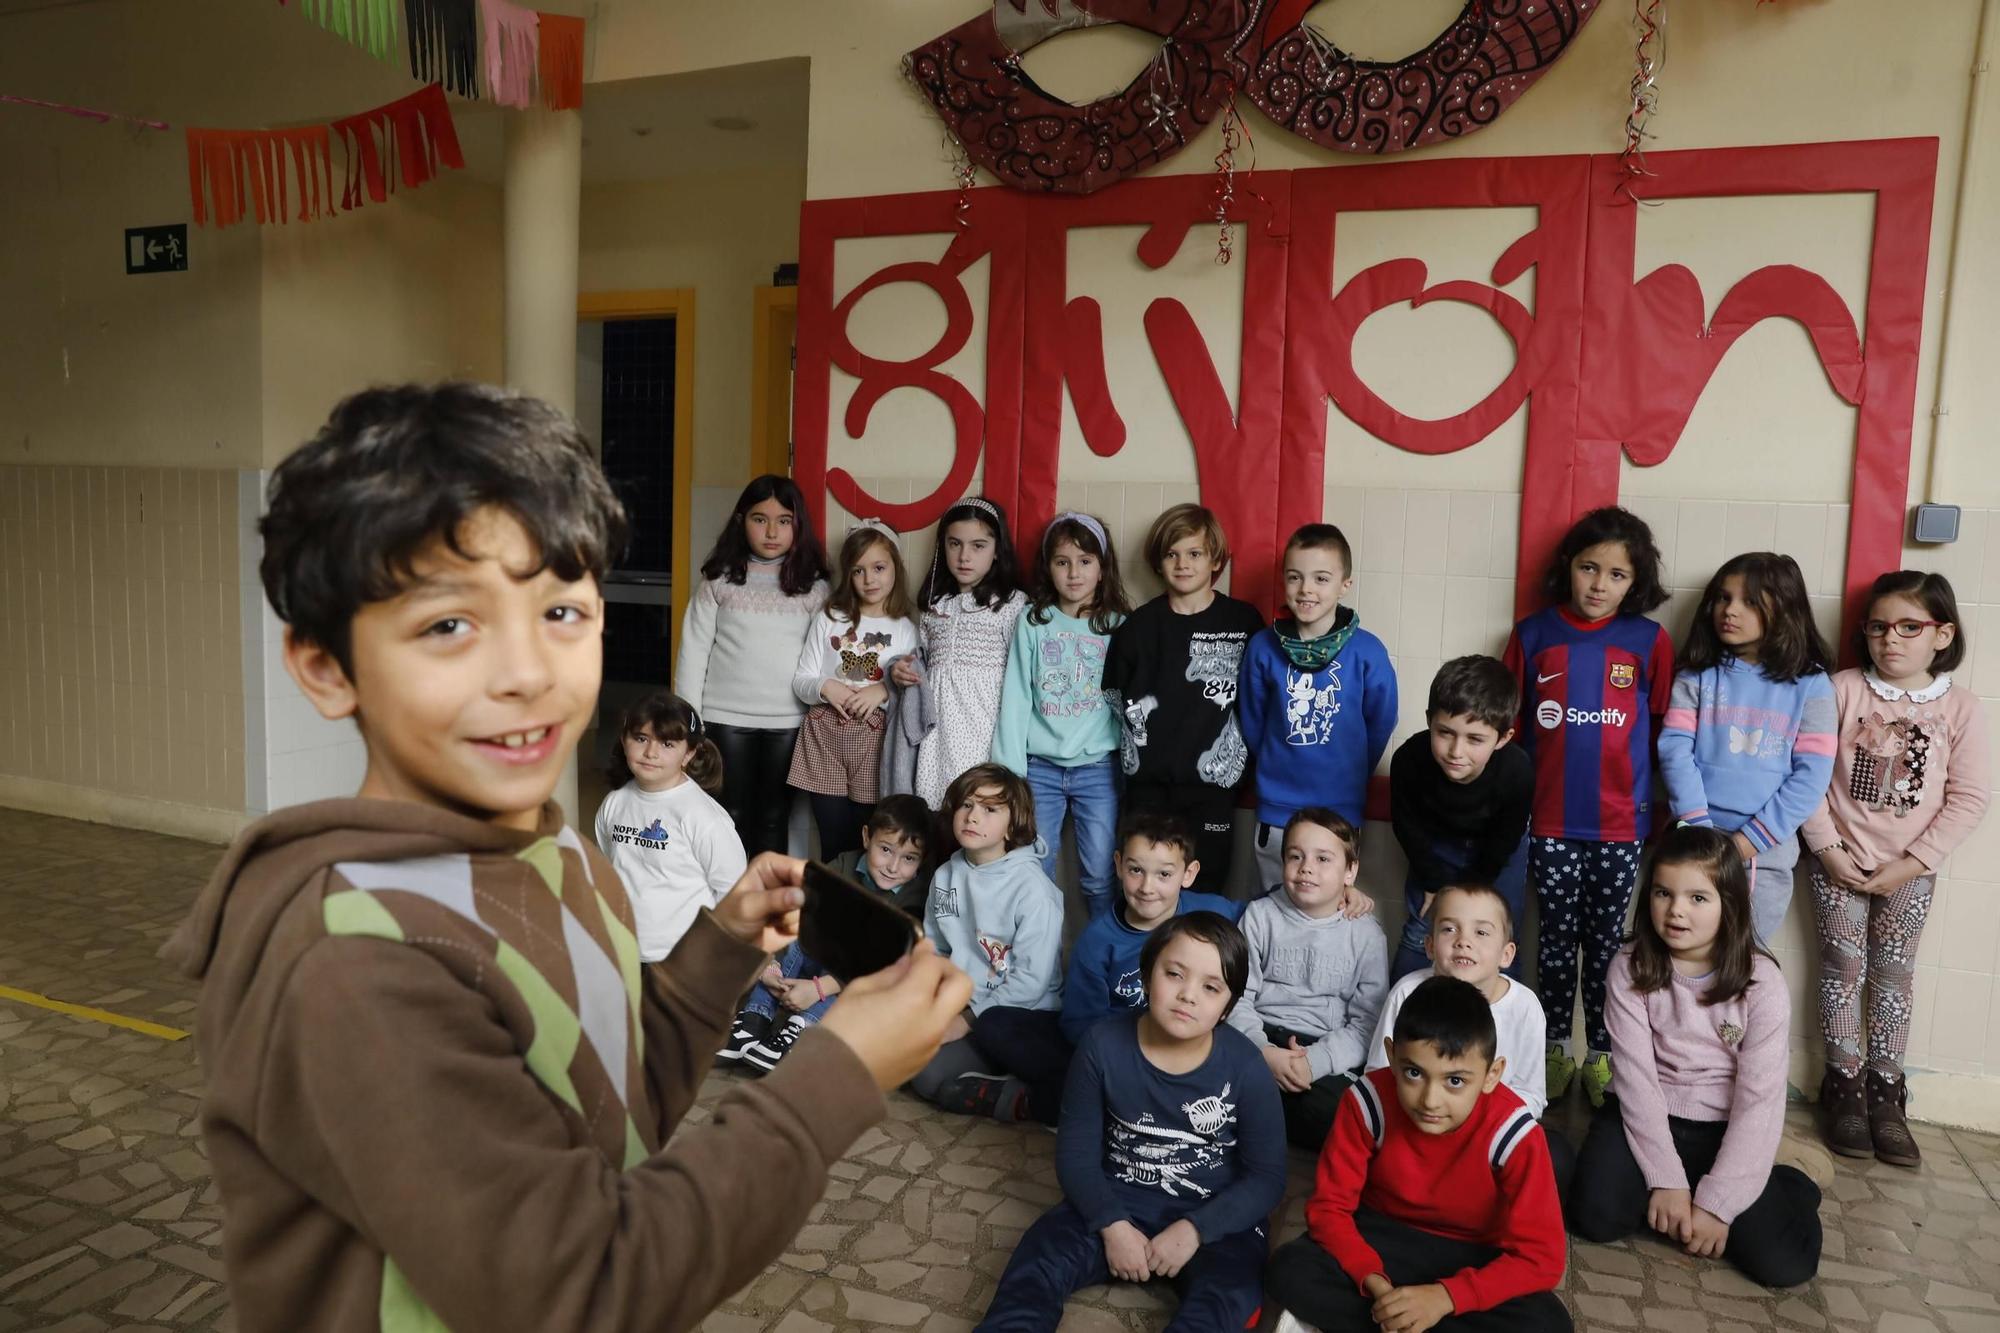 De aula en aula: El colegio Alfonso Camín, un pozo de sabiduría asturiana (en imágenes)